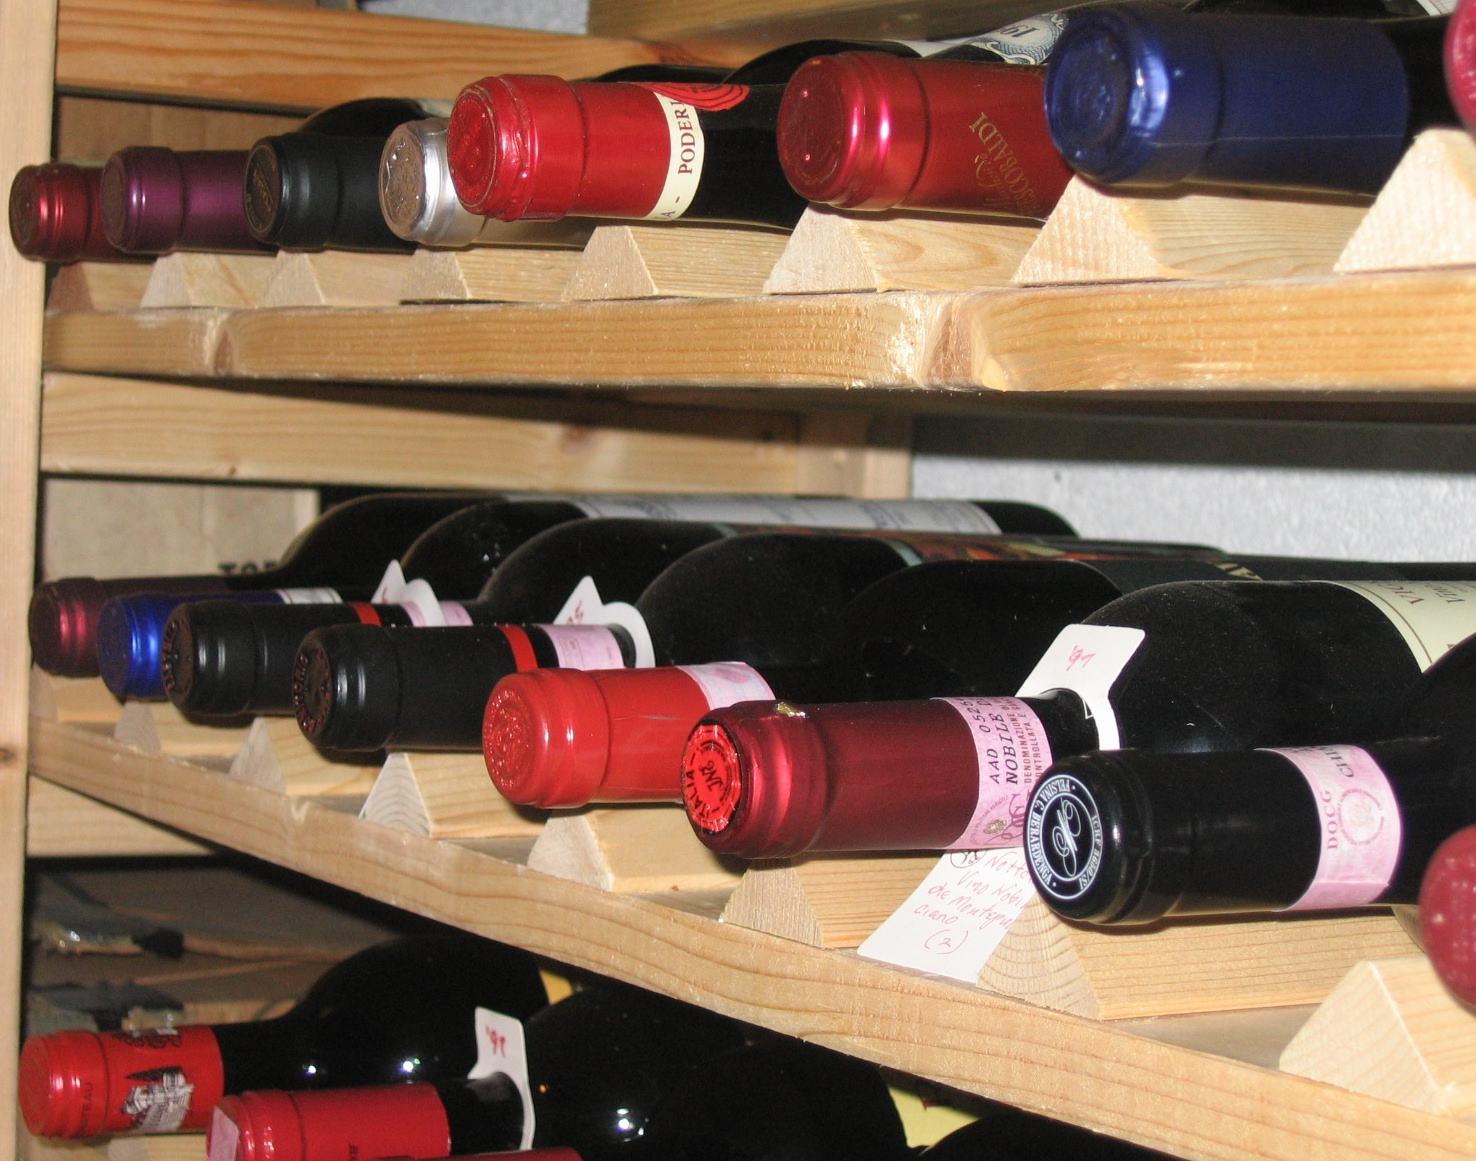 Italian bottles on wine racks